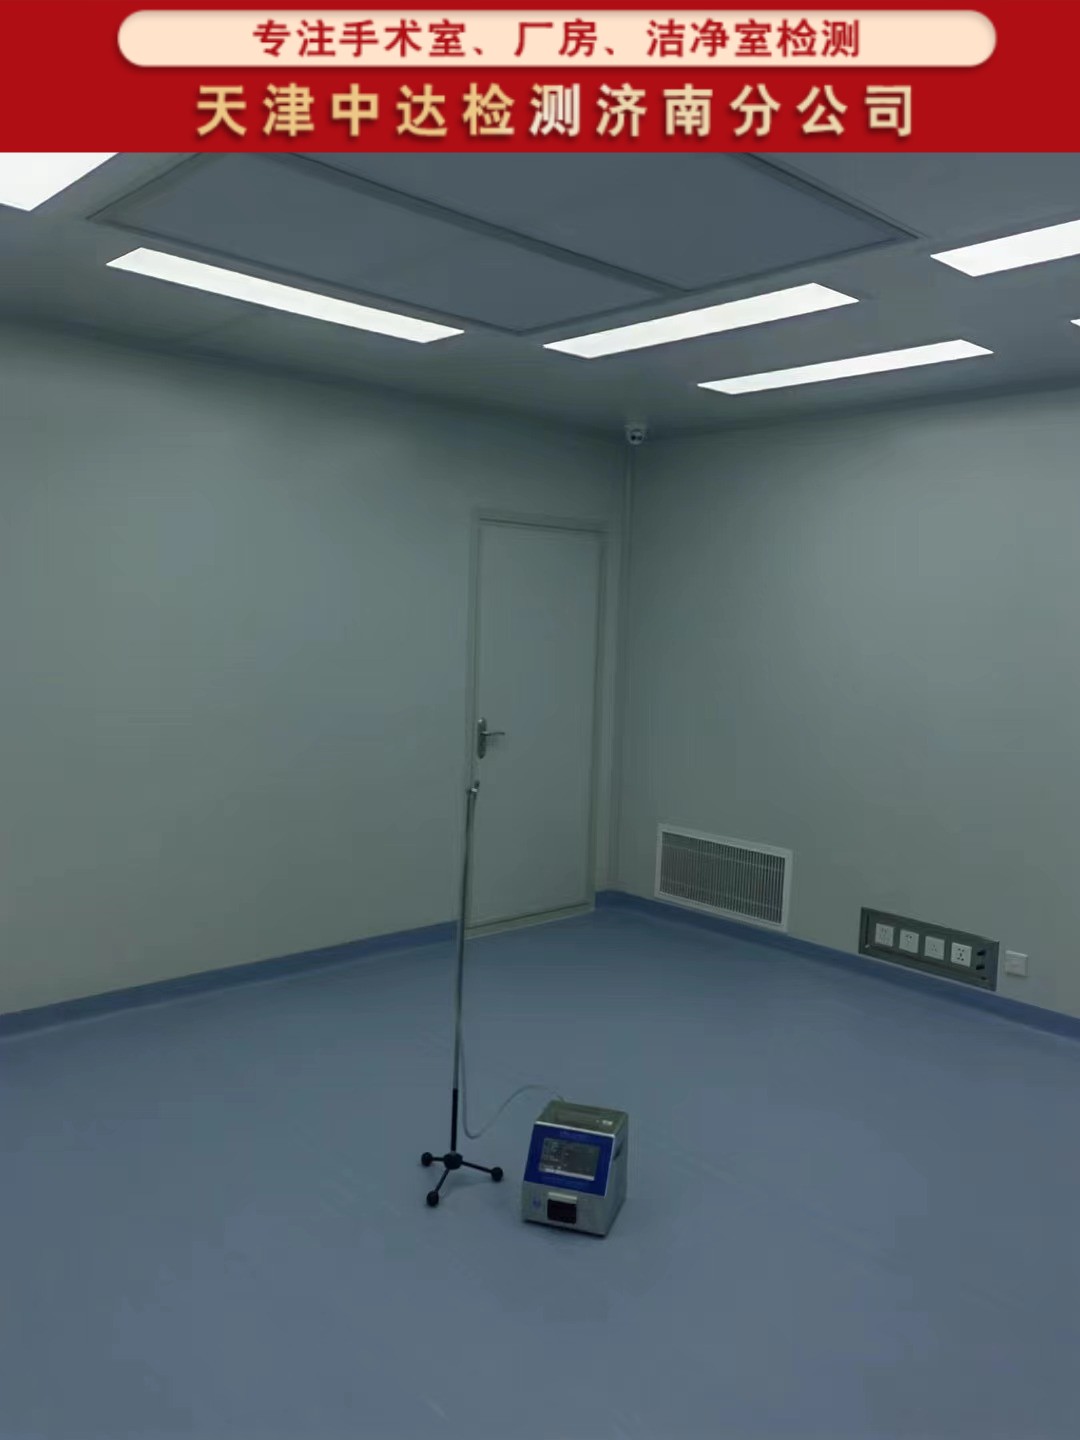 青岛平度市千级手术室洁净度级别检测第三方-天津中达检测济南分公司